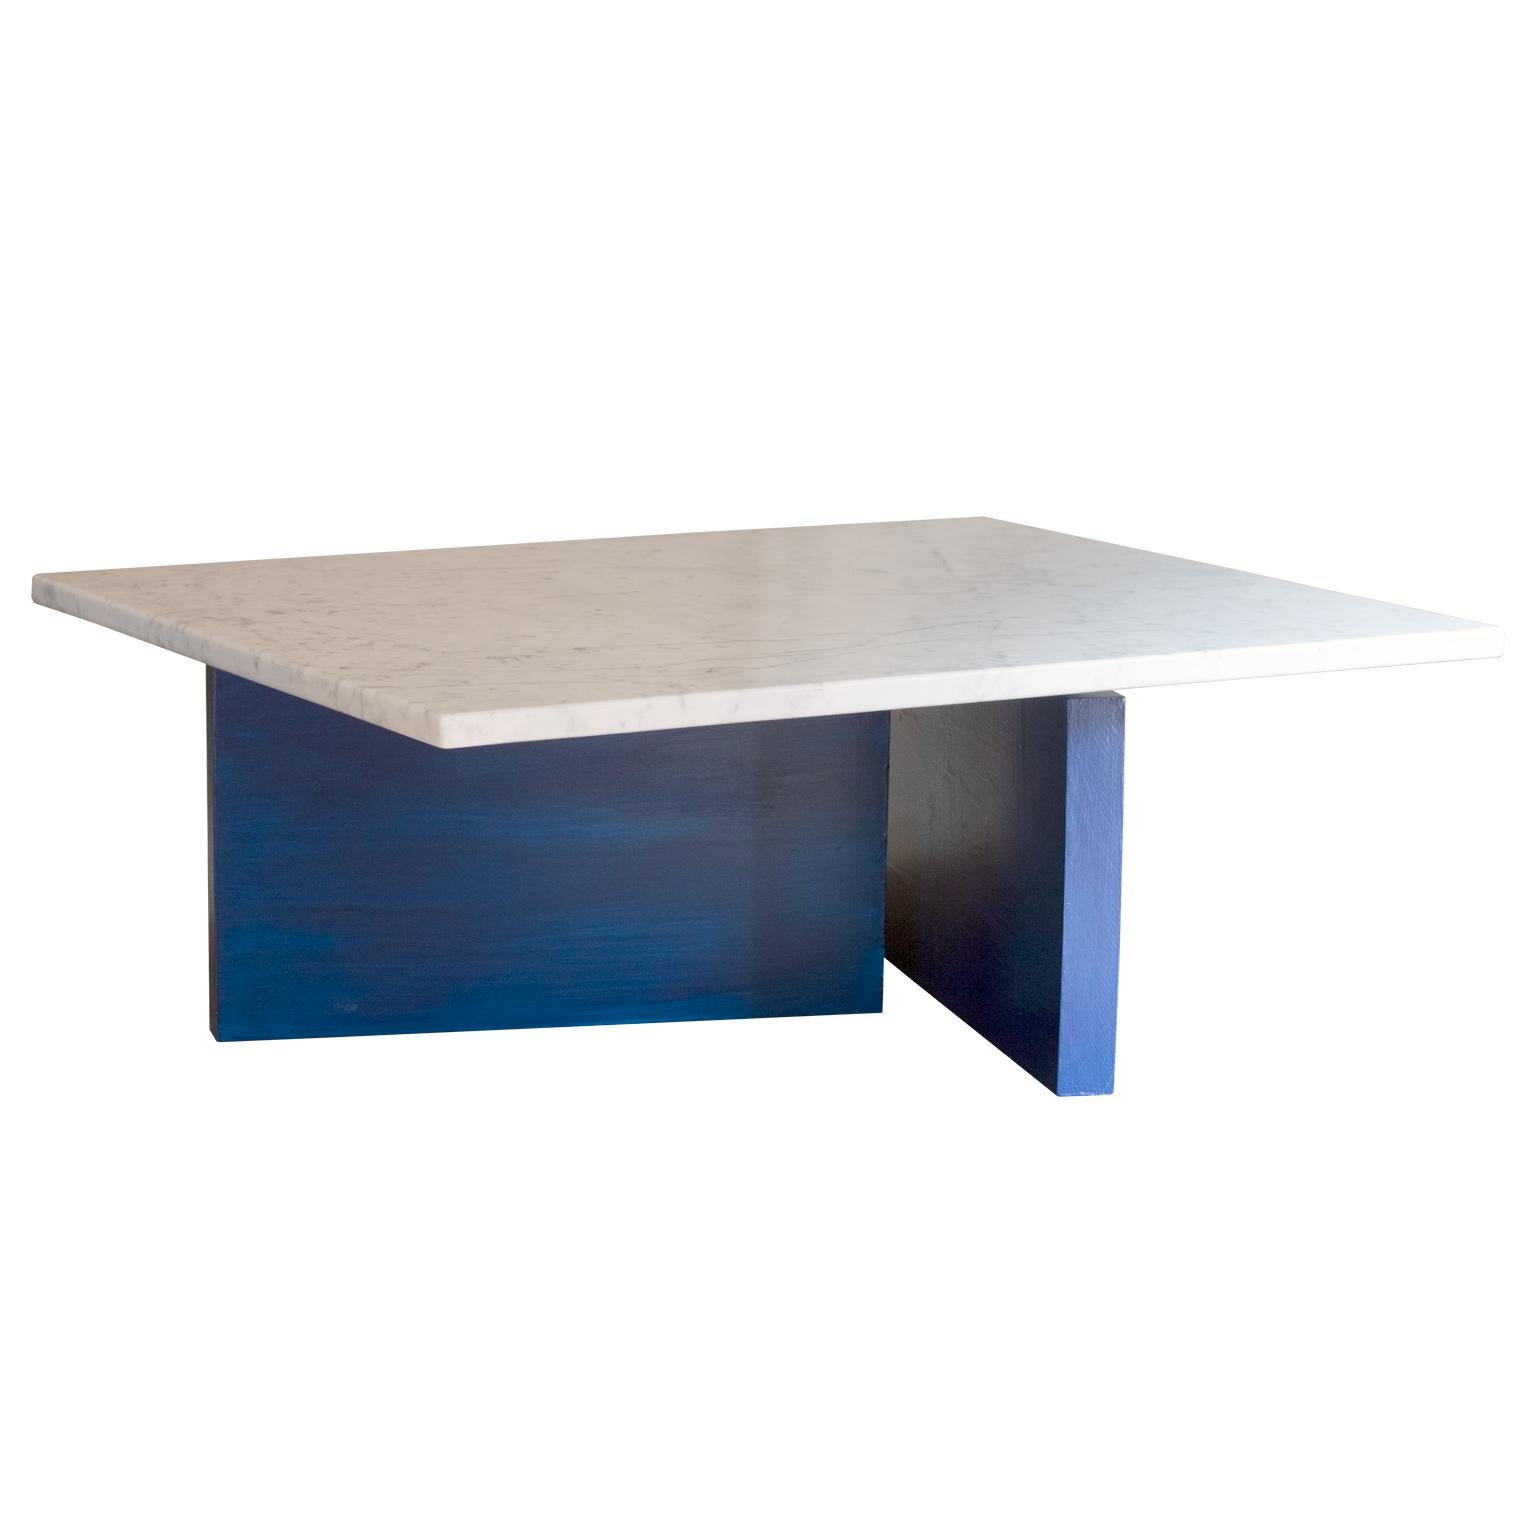 Une belle table basse minimale inspirée de l'architecture et de l'art du Bauhaus. 
Cette pièce présente un plateau en marbre de Carrare adouci sur une base en érable massif finie en laque. 

Des finitions personnalisées en marbre et en laque sont